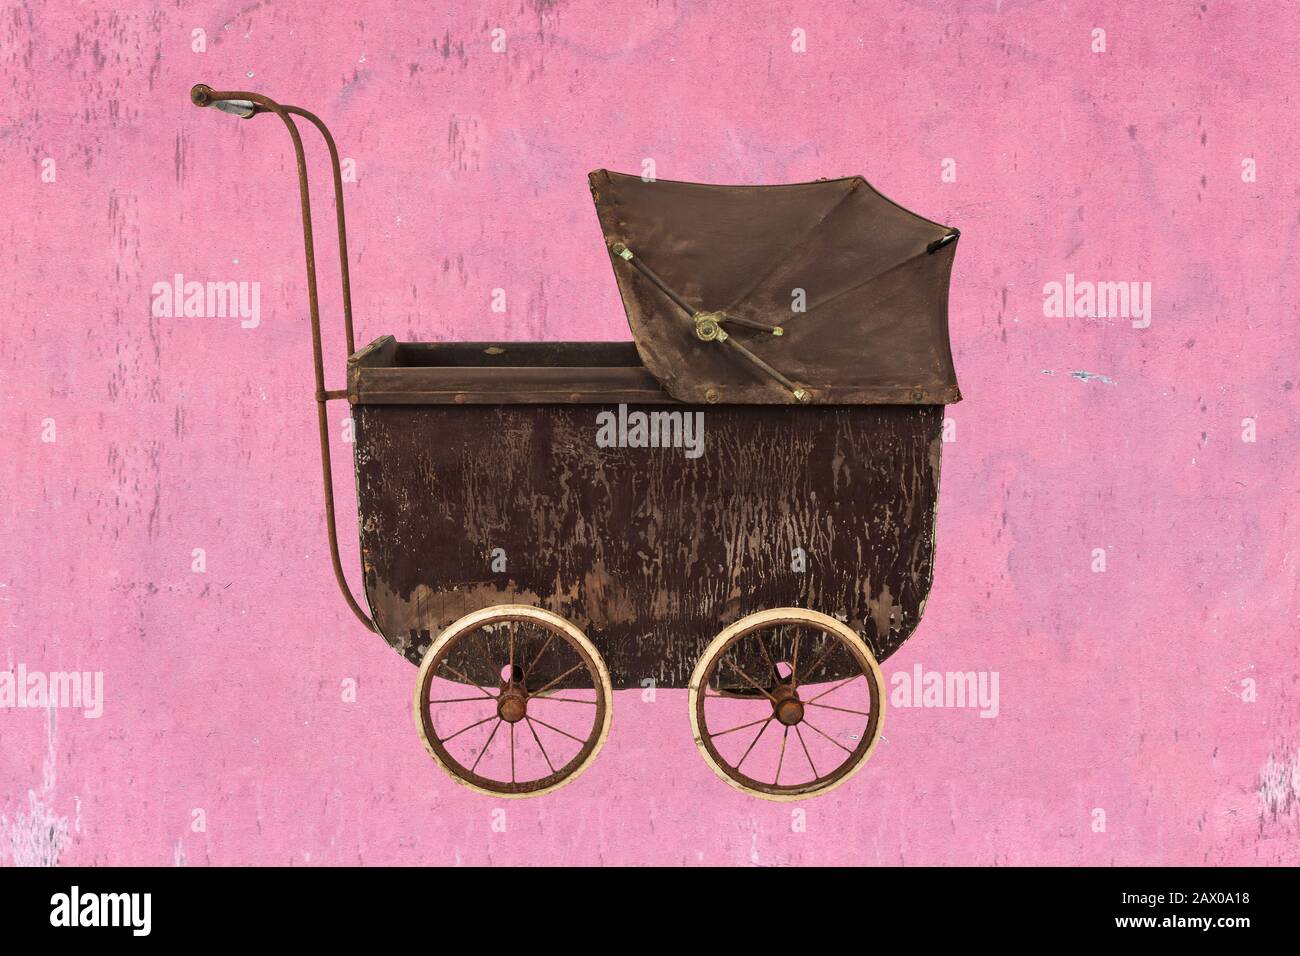 Brauner Kinderwagen in Vintage-Braun vor einem rosafarbenen, erodierten Hintergrund Stockfoto